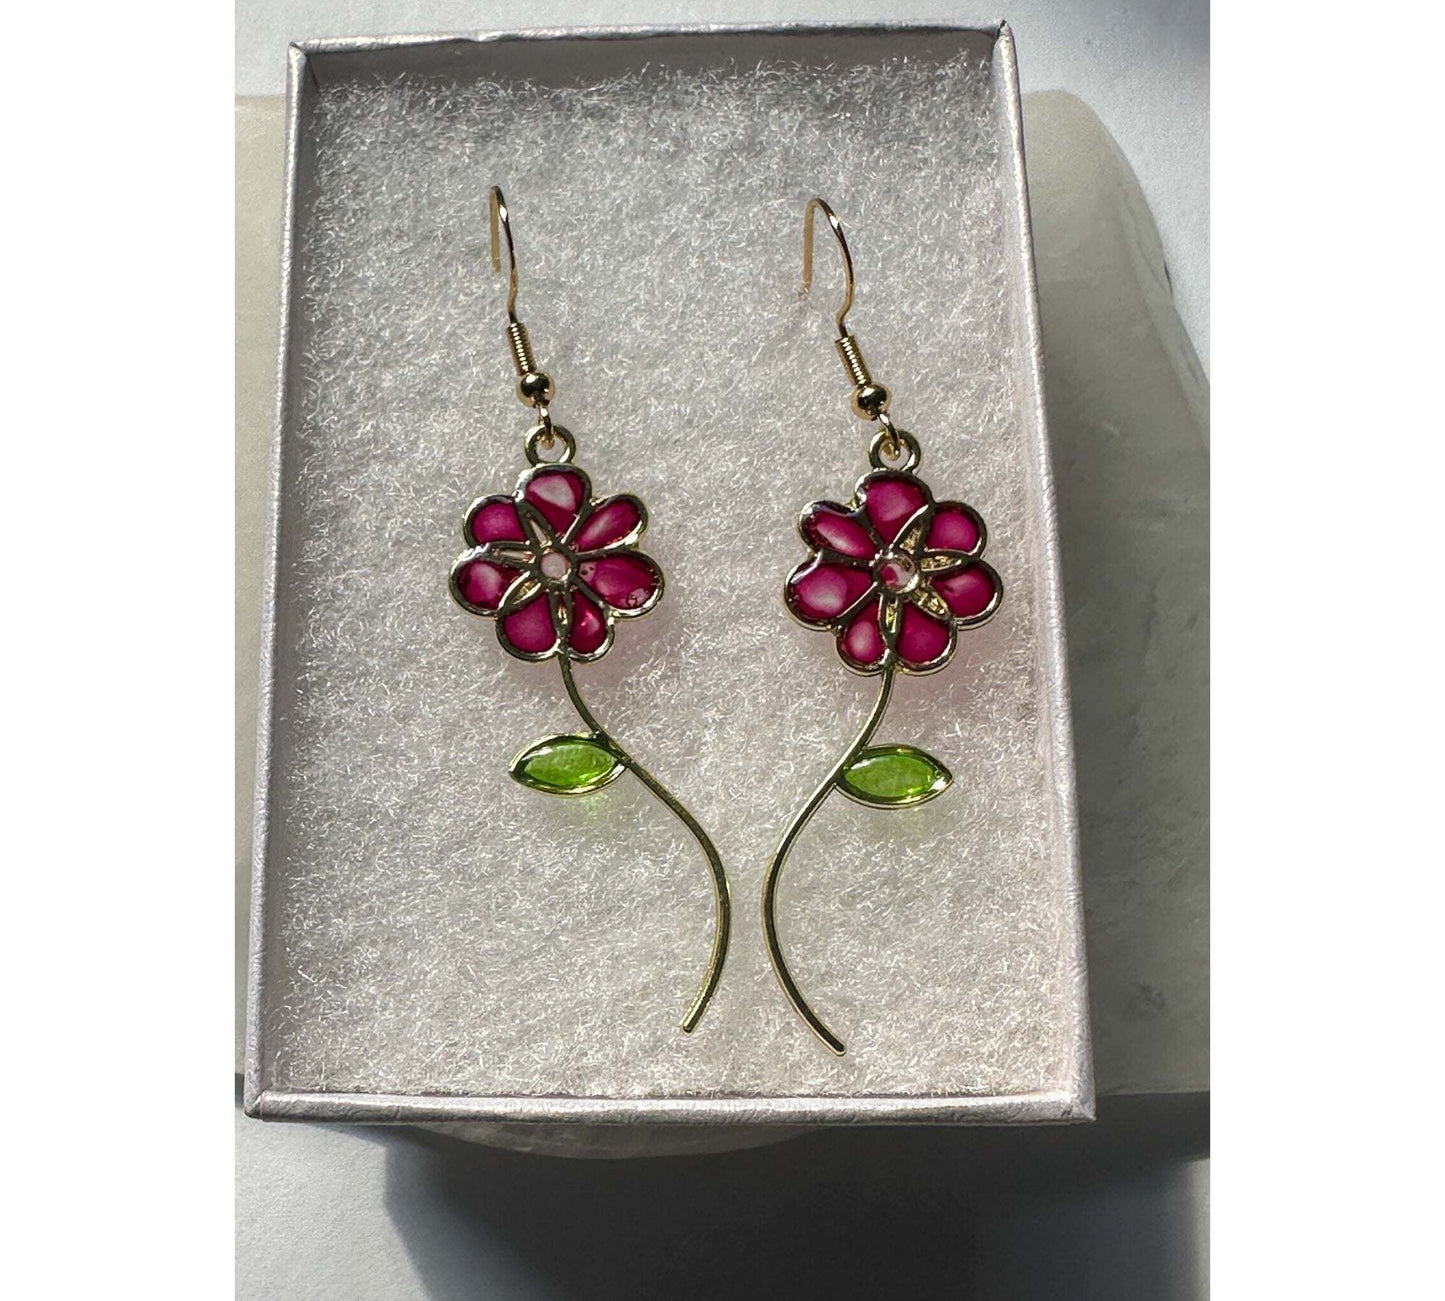 Handmade Quartz Blossom Resin Earrings - Bloom with Nature's Energy